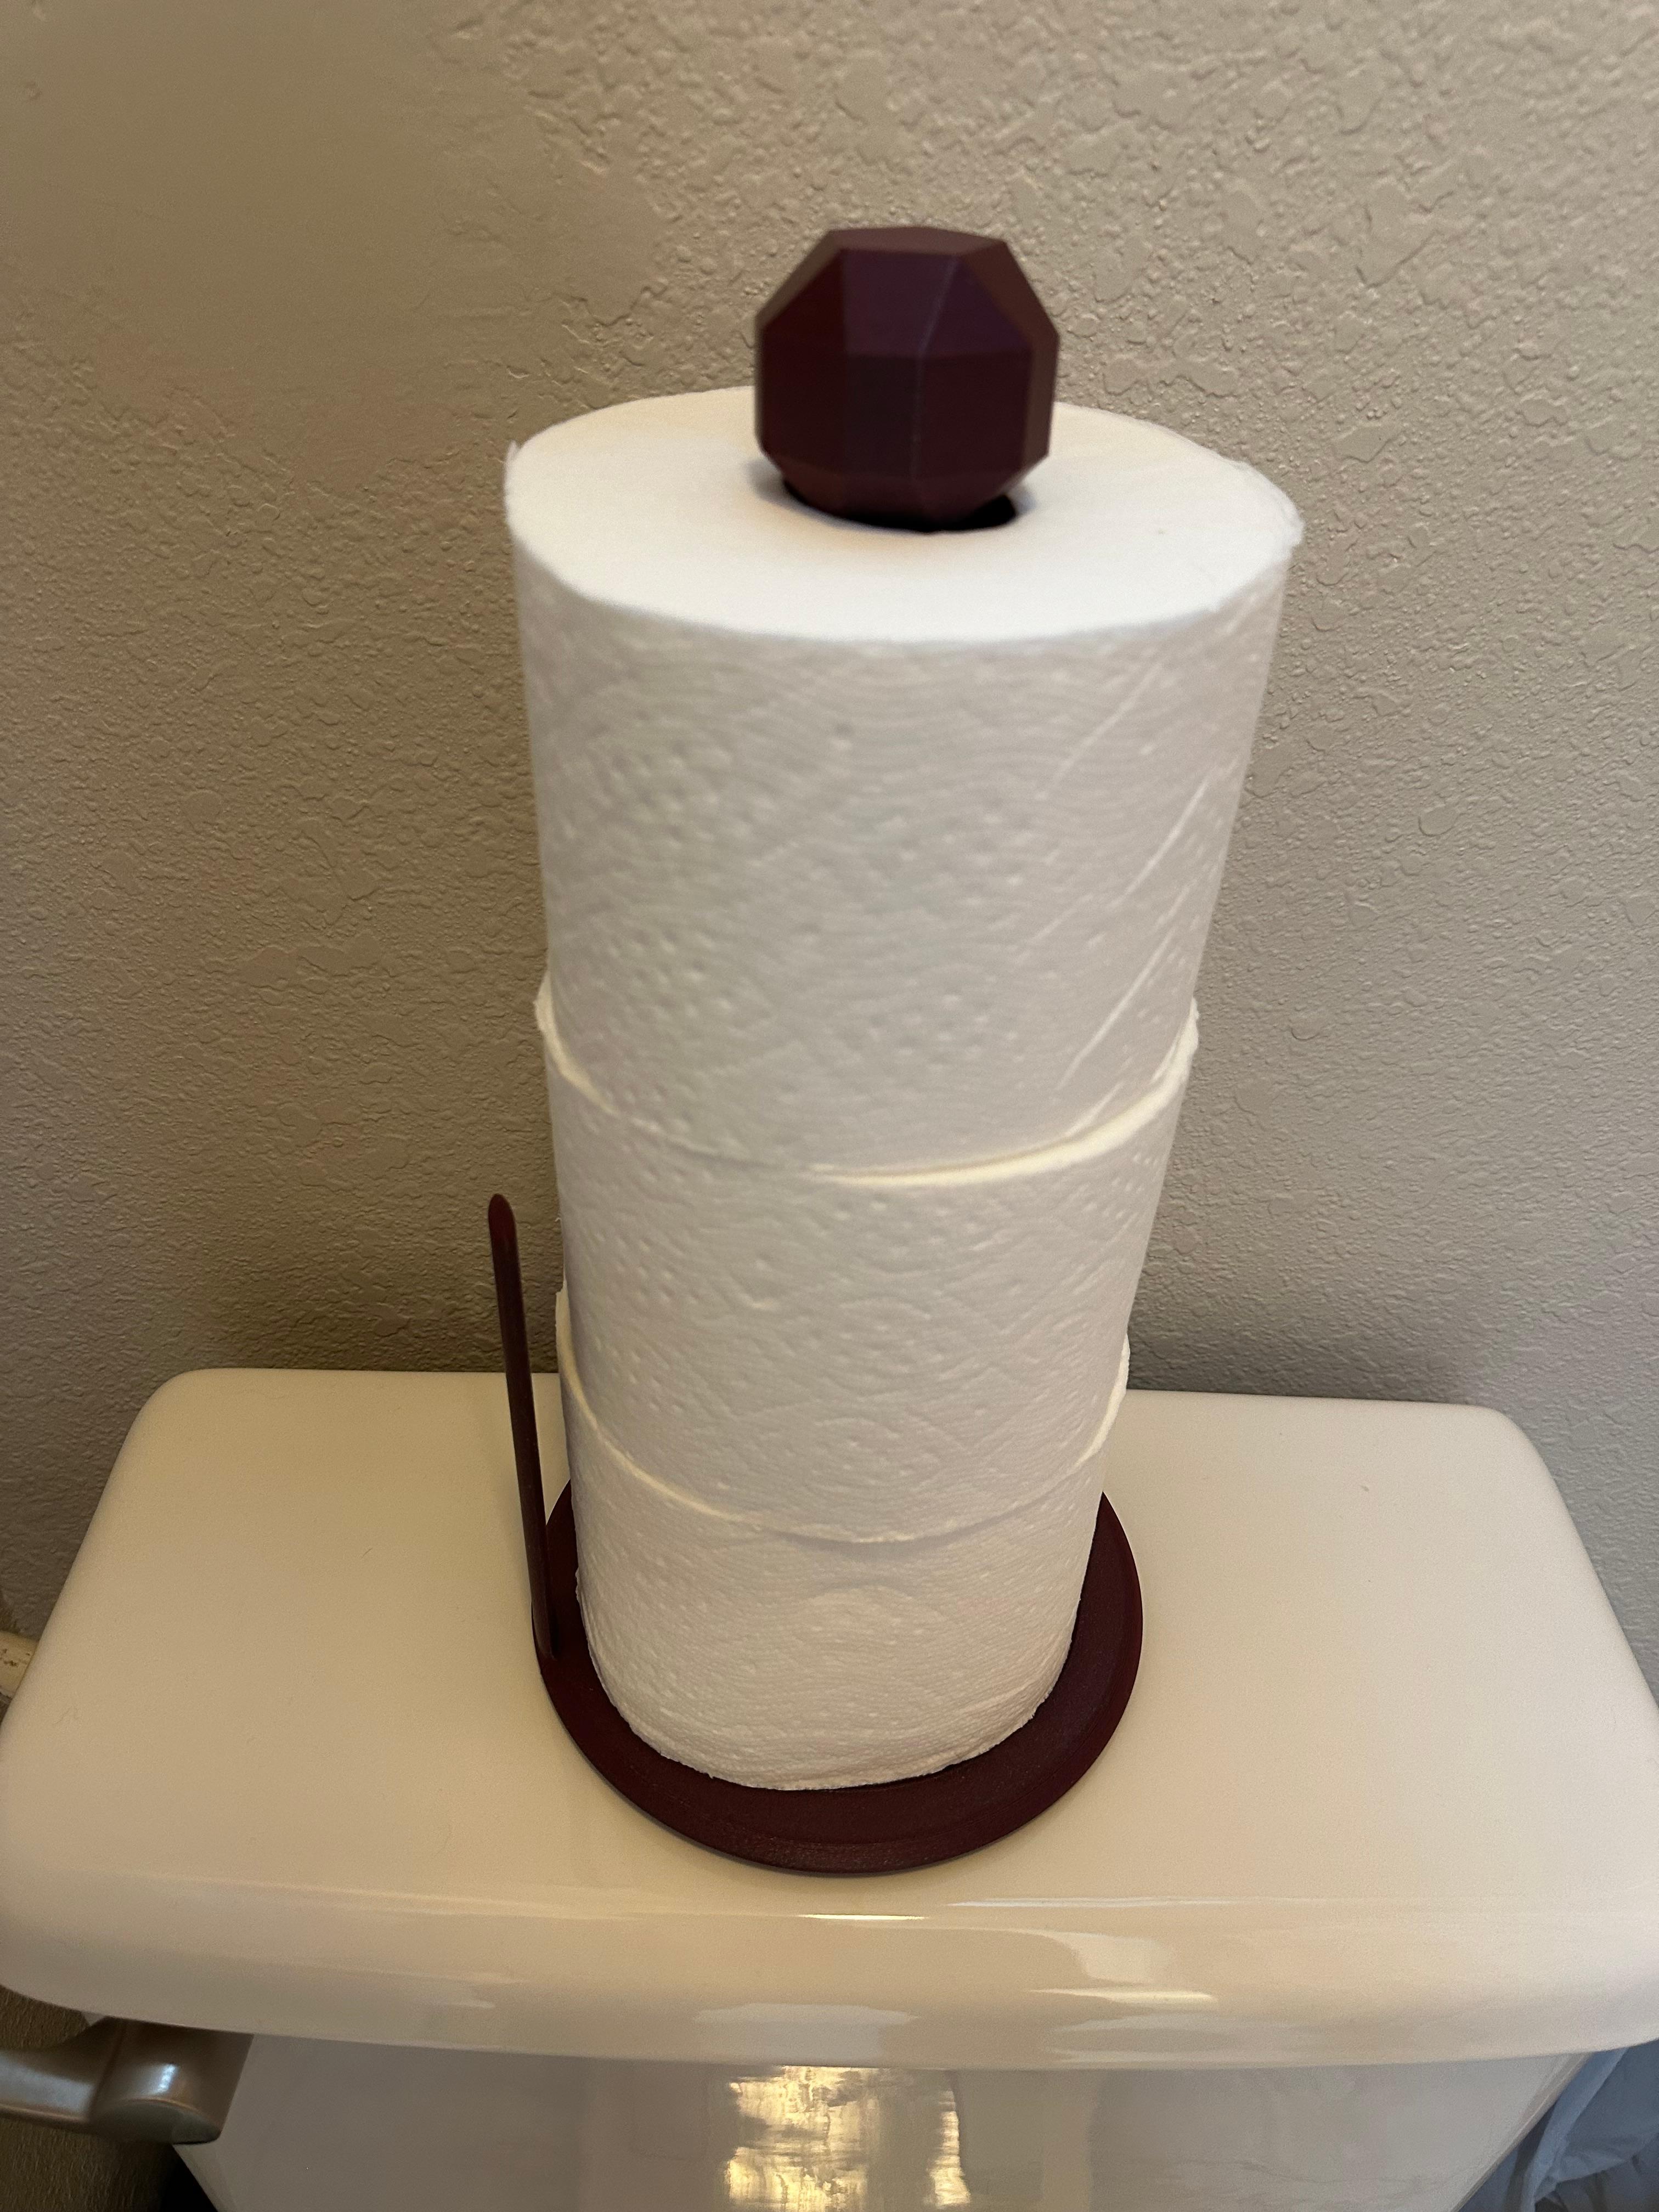 Paper towel holder V3 3d model